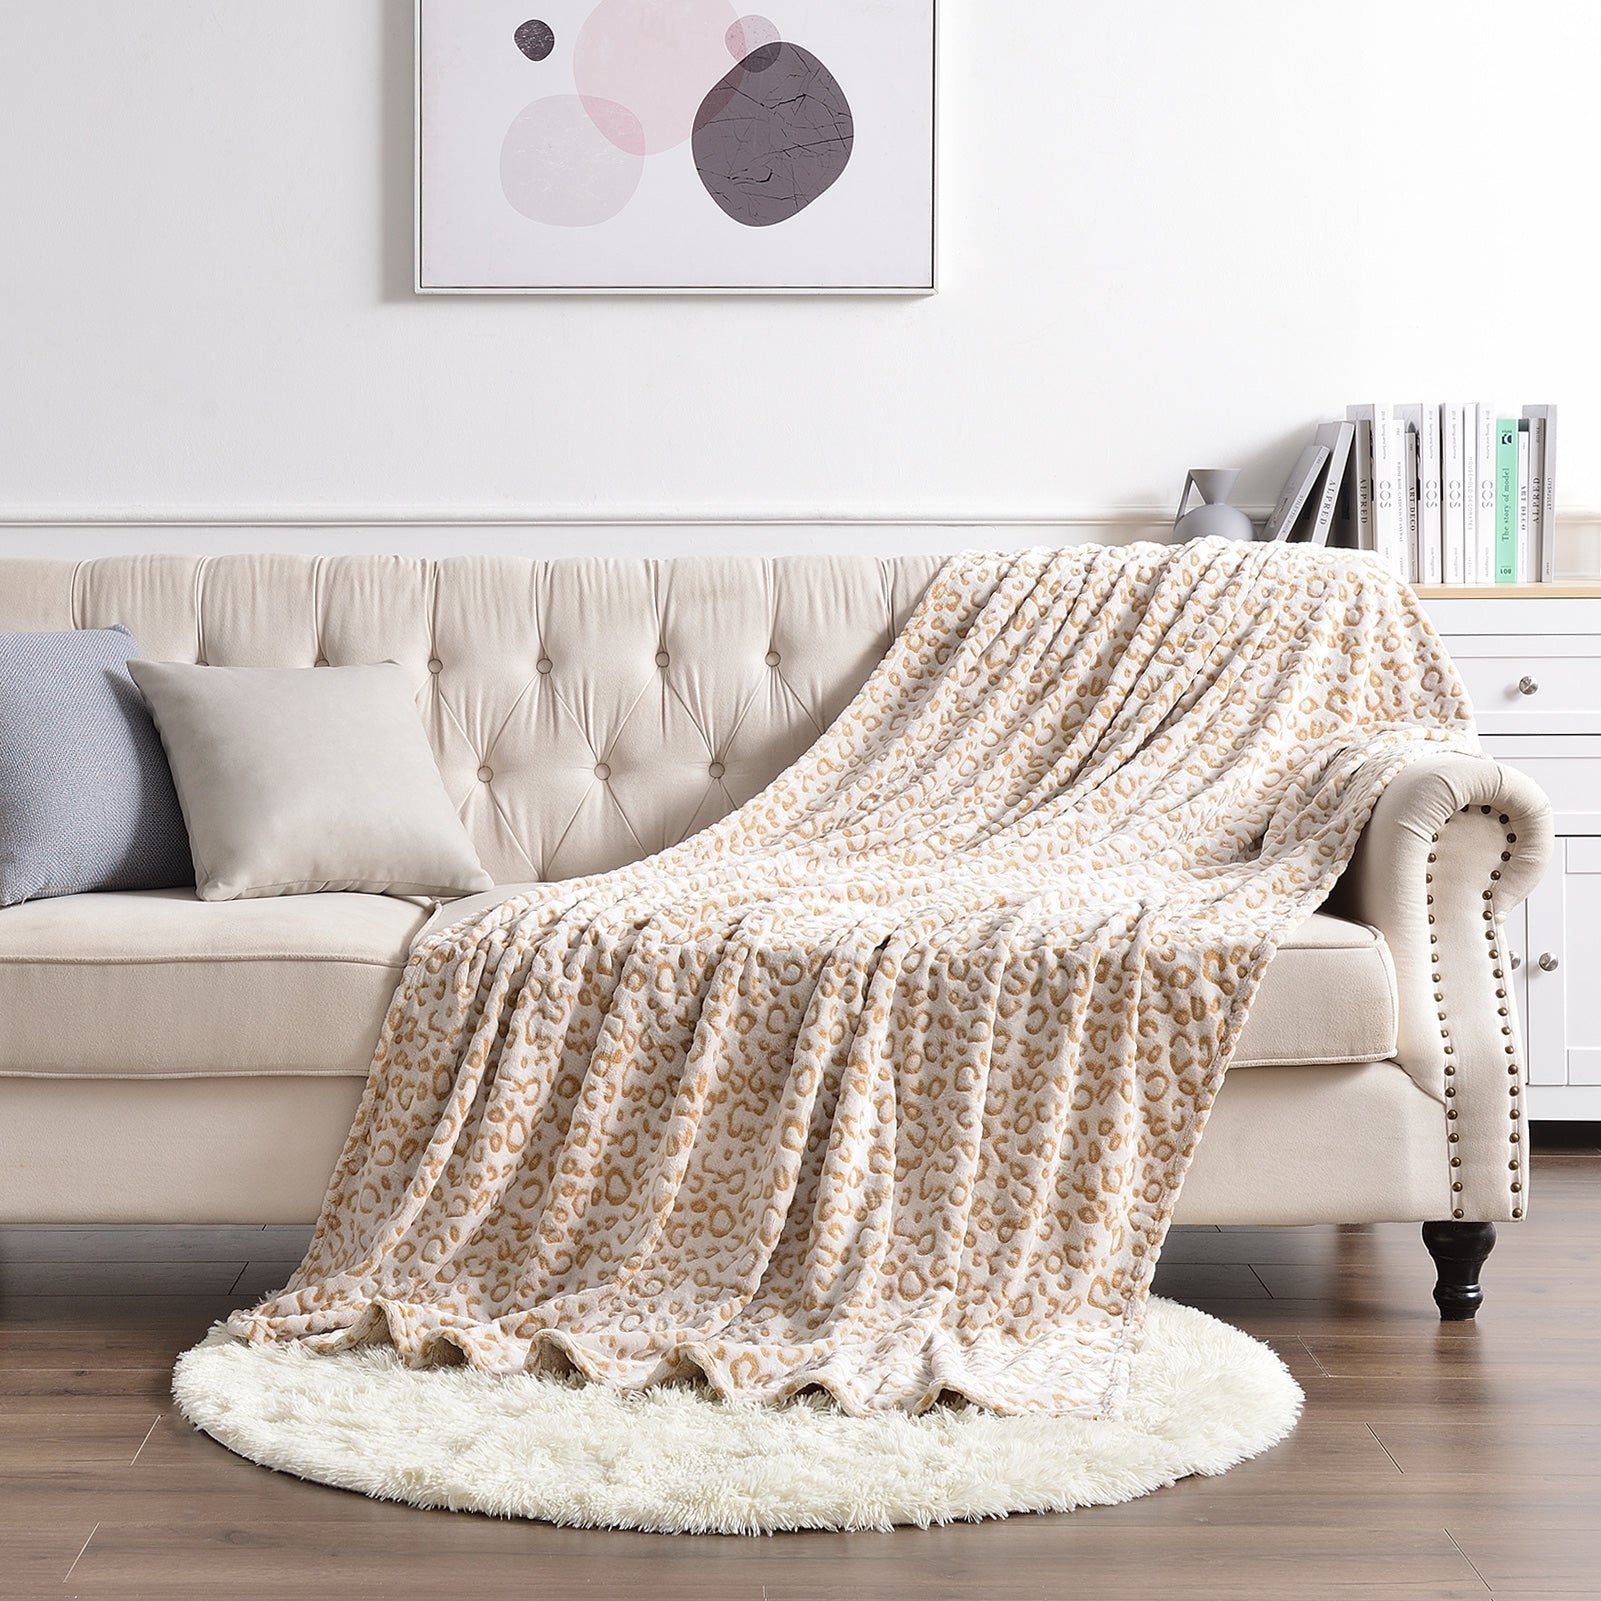 Flannel Fleece Throw Blanket - Leopard Print